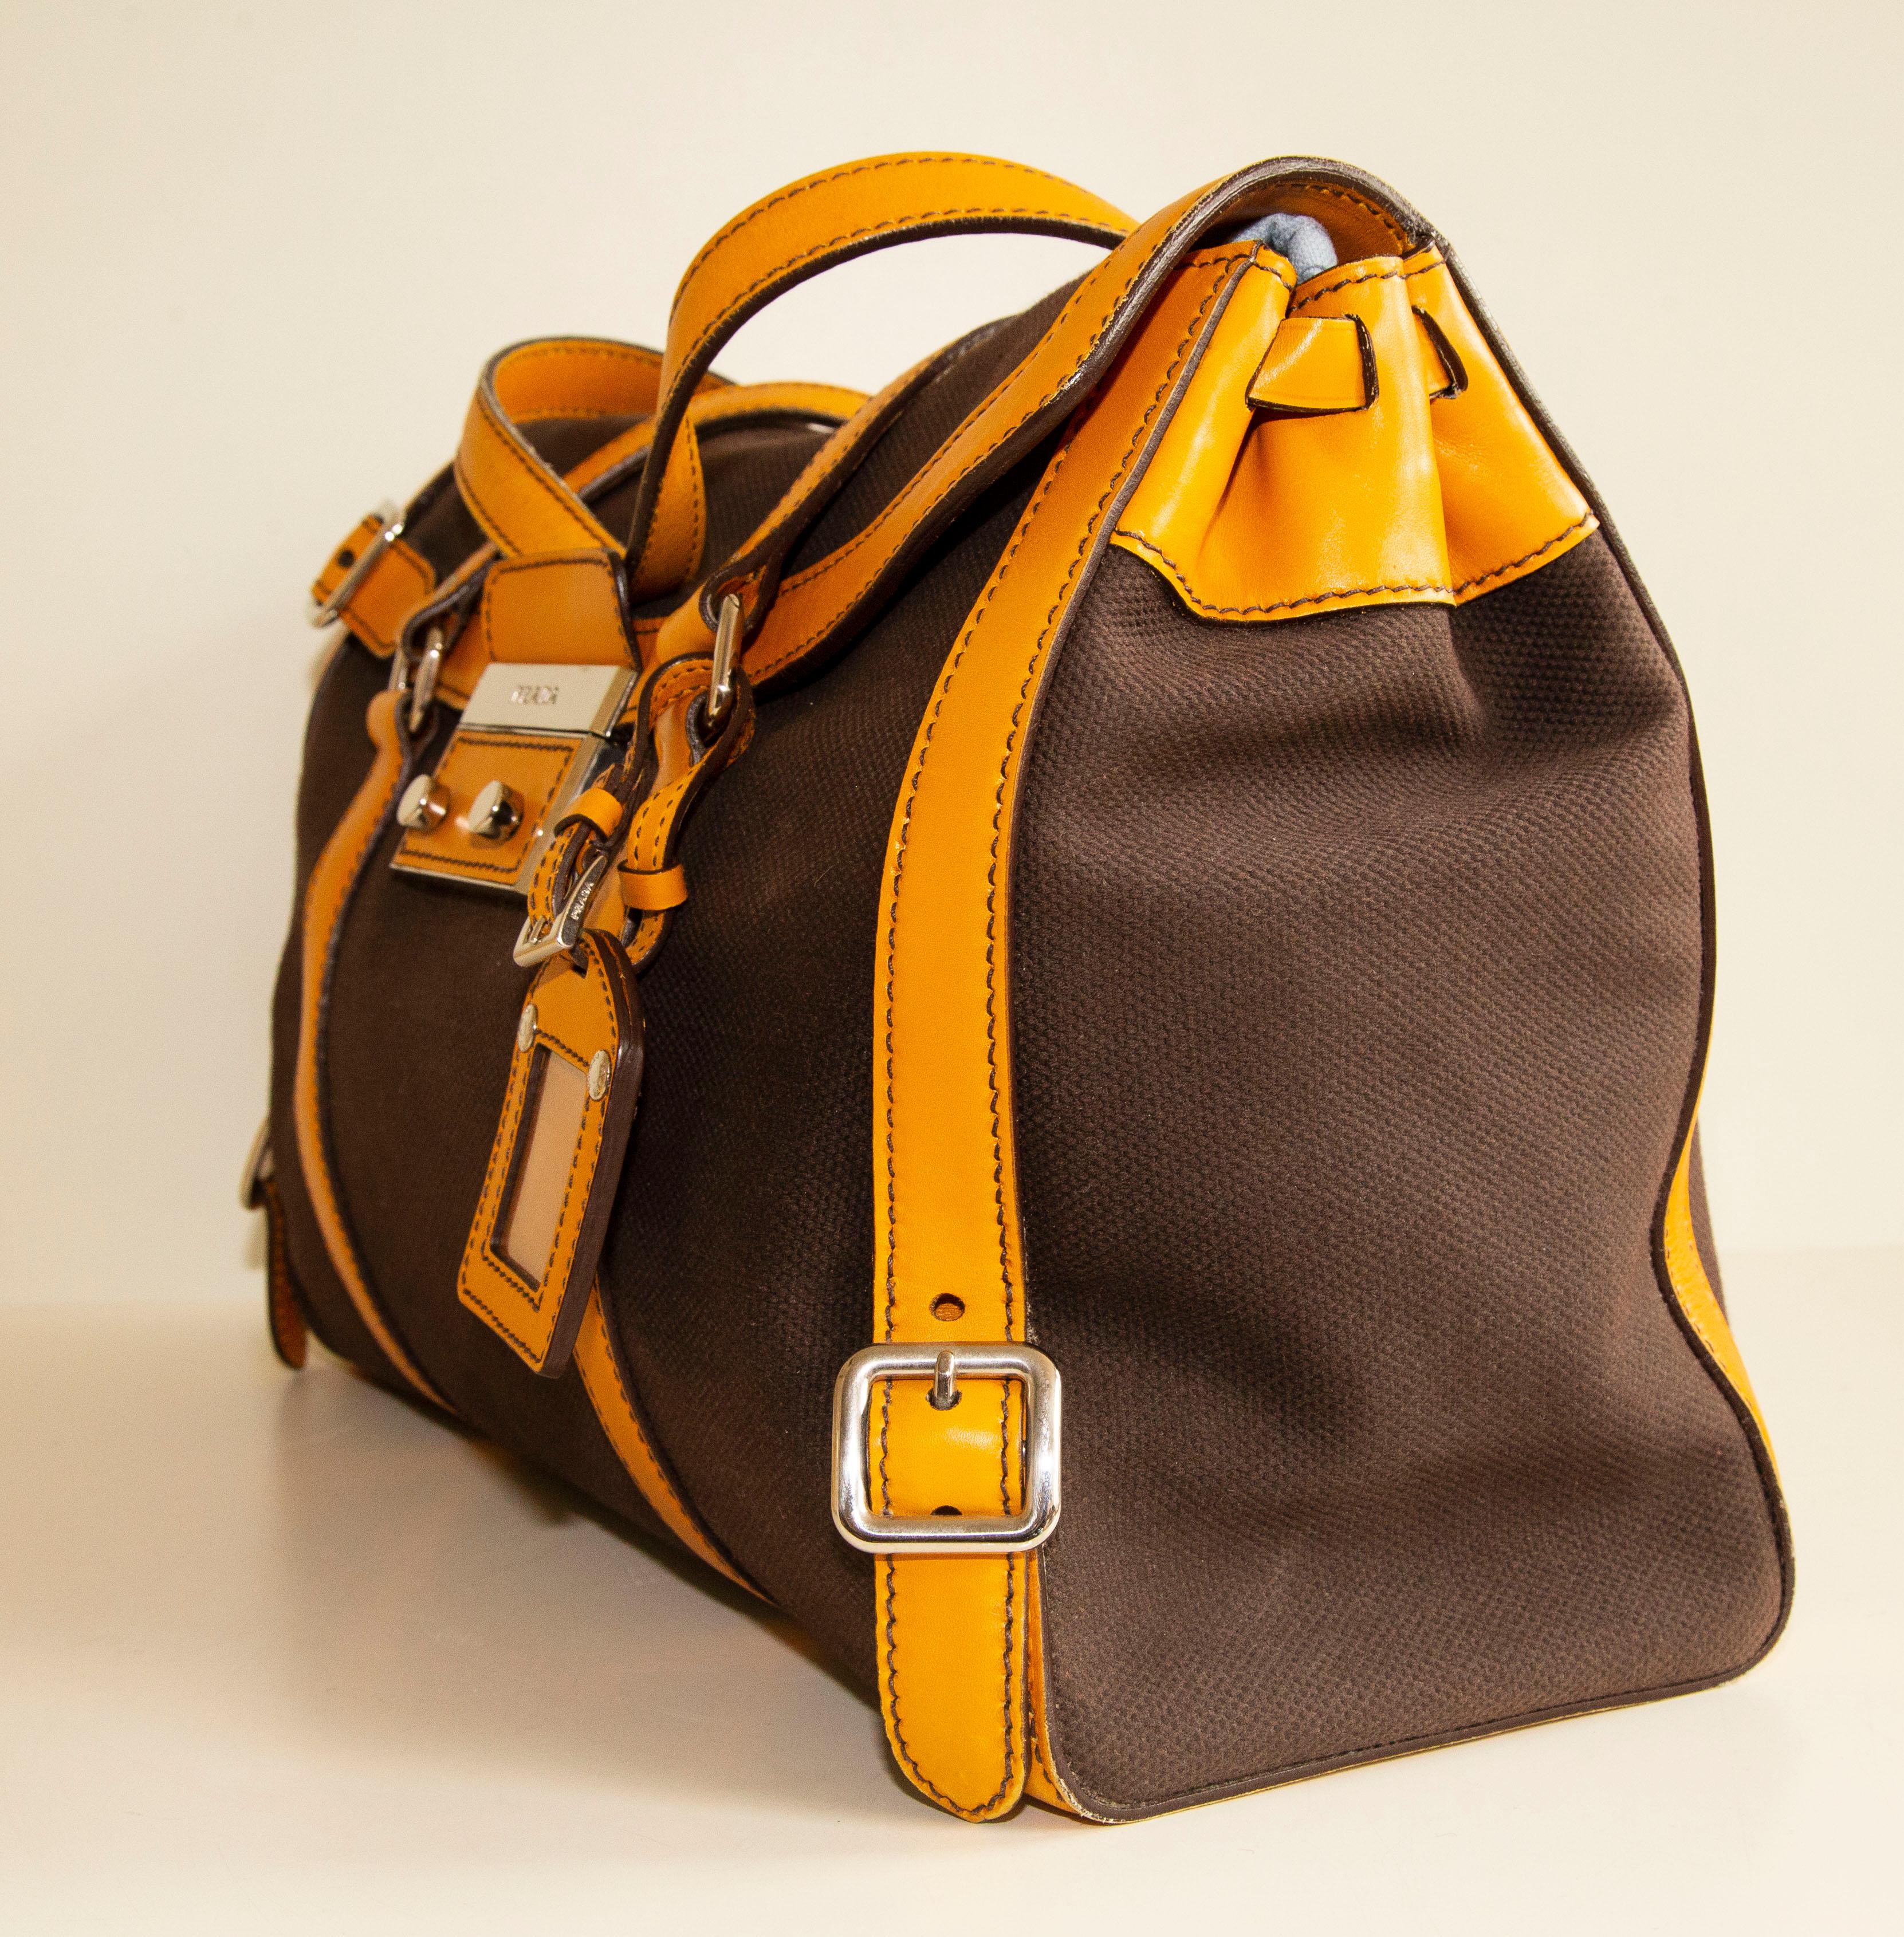 Un authentique sac à bandoulière Prada. Le sac présente un extérieur en toile marron, des garnitures en cuir jaune moutarde et des ferrures de couleur argentée. L'intérieur est doublé de cuir jaune et, à côté du compartiment principal, se trouve une